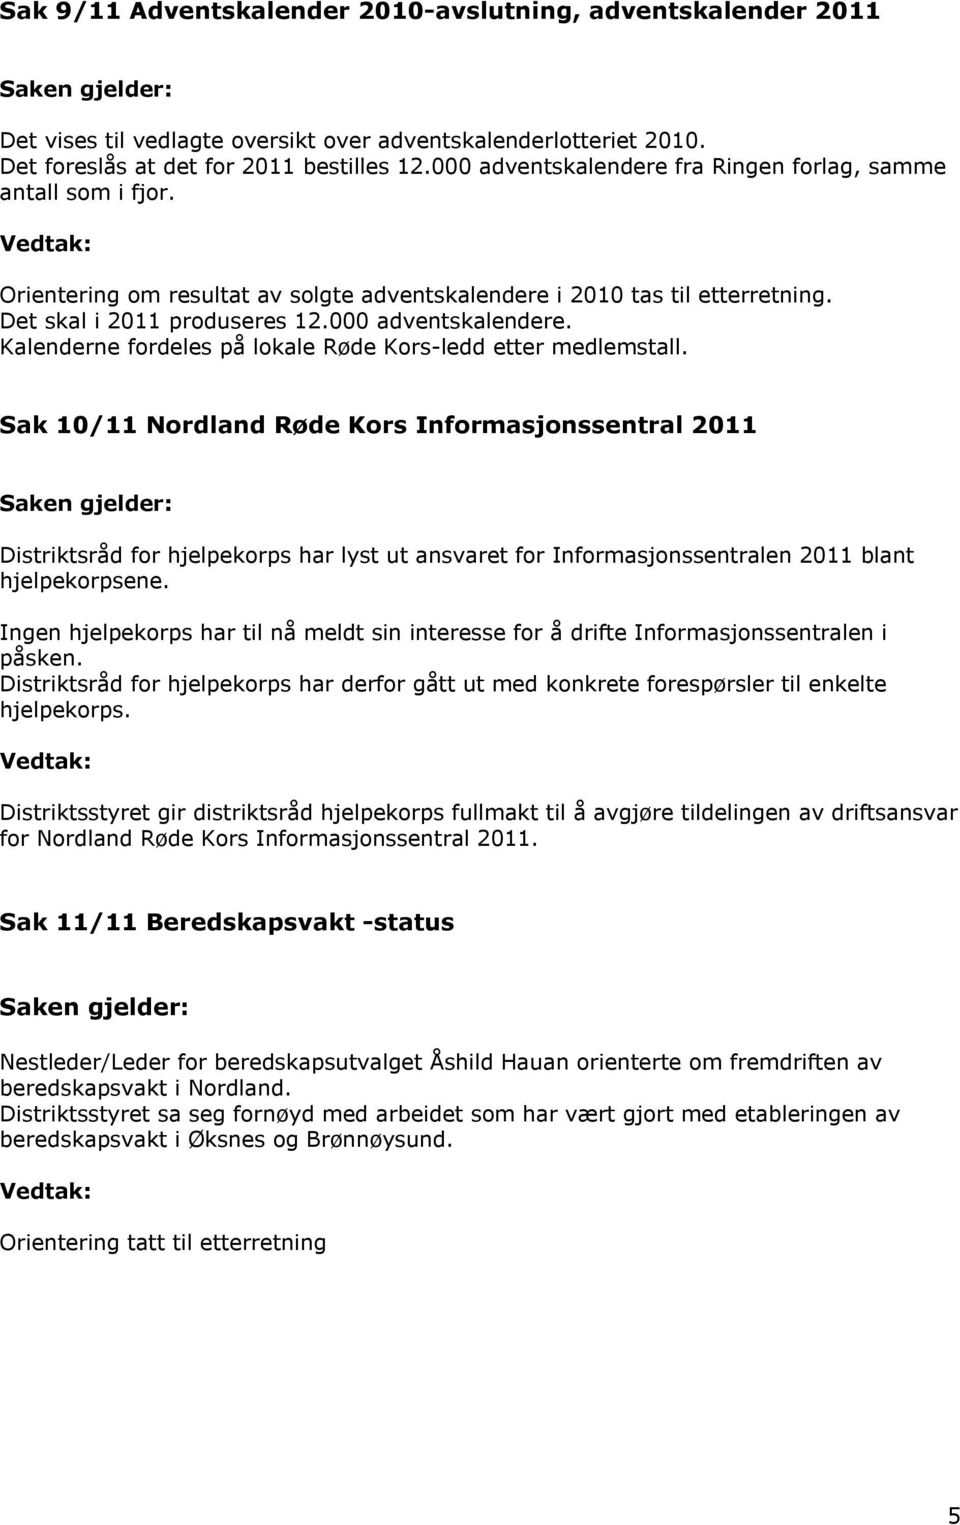 Sak 10/11 Nordland Røde Kors Informasjonssentral 2011 Distriktsråd for hjelpekorps har lyst ut ansvaret for Informasjonssentralen 2011 blant hjelpekorpsene.